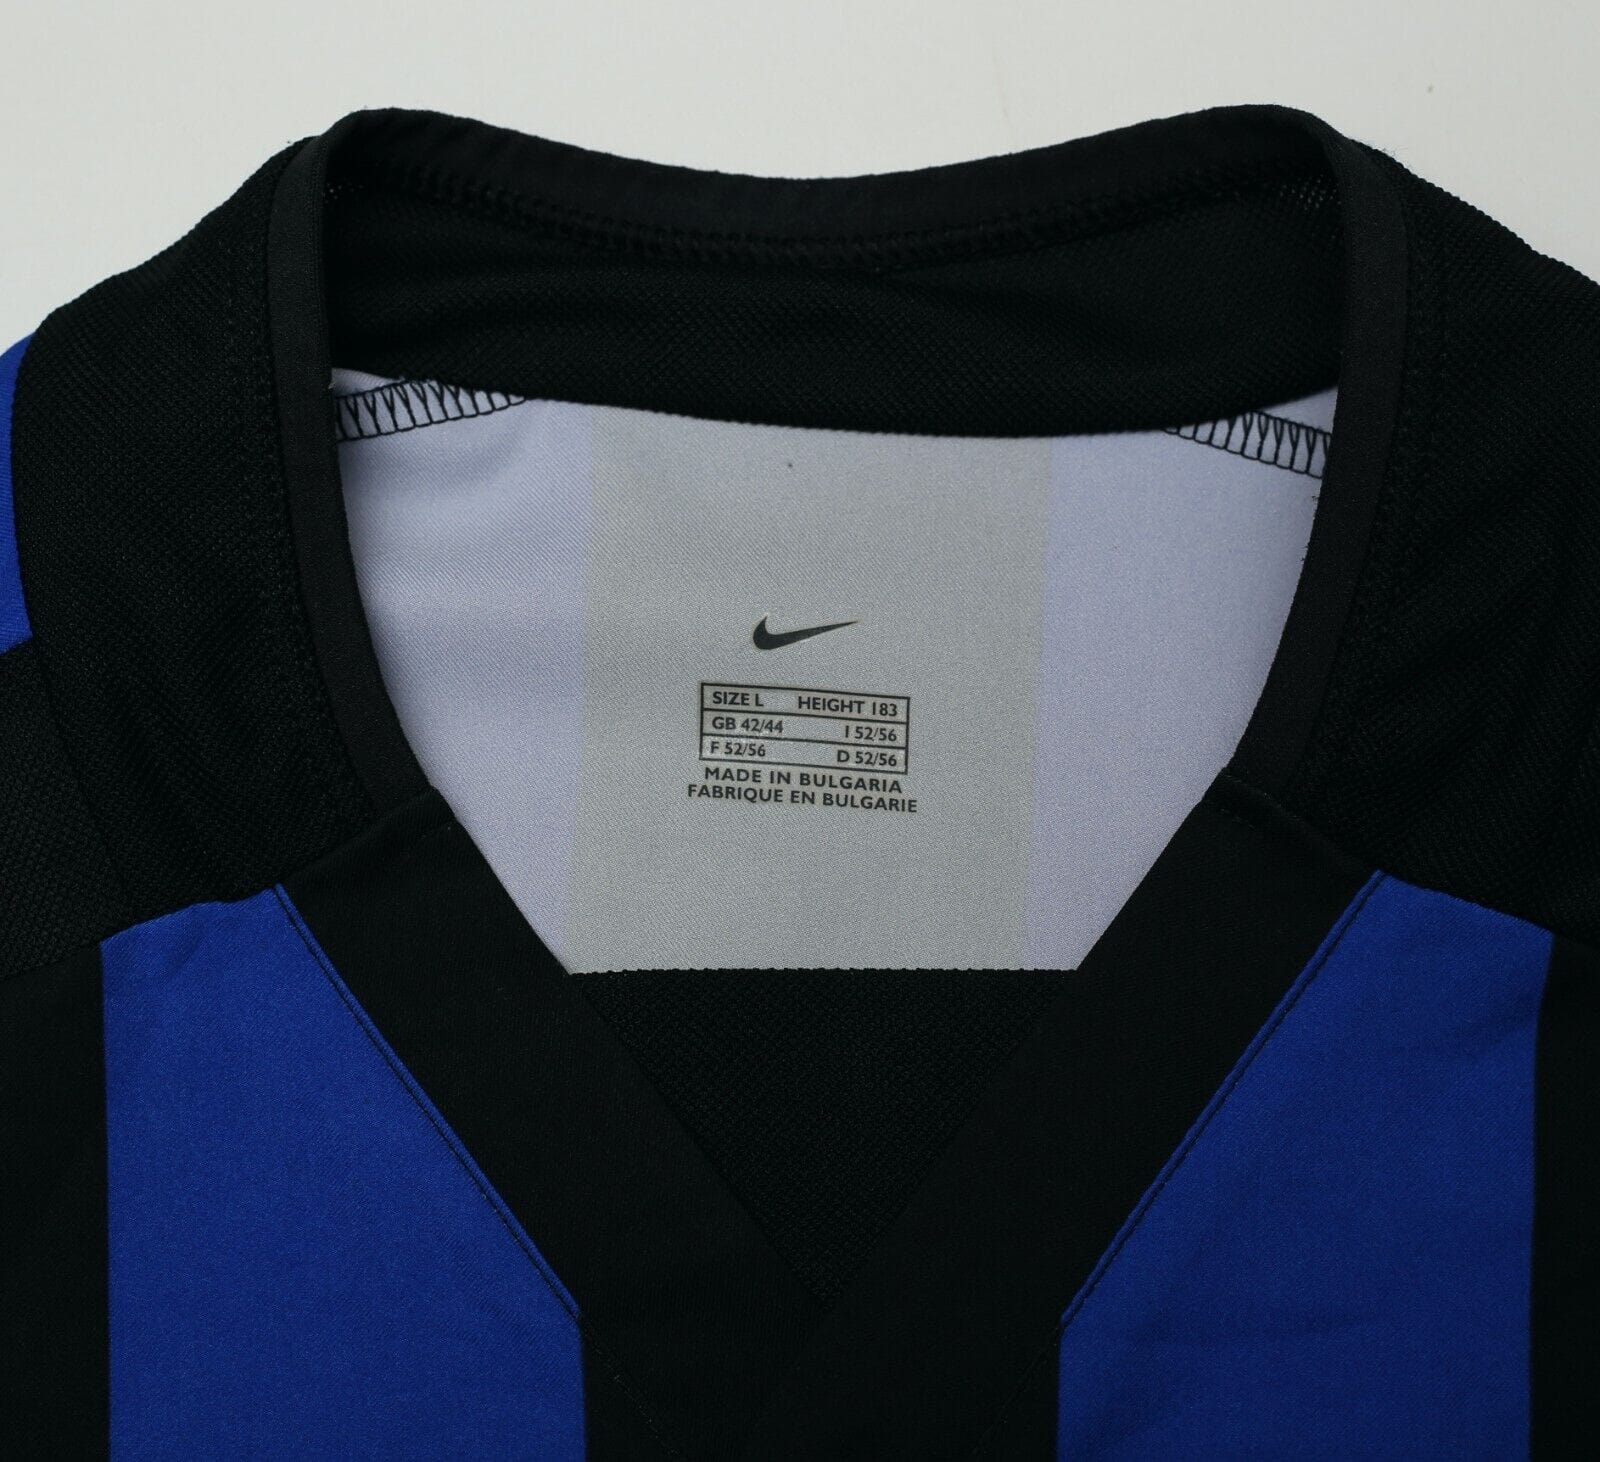 2002/03 BATISTUTA #19 Inter Milan Vintage Nike Home Football Shirt Jersey (L)